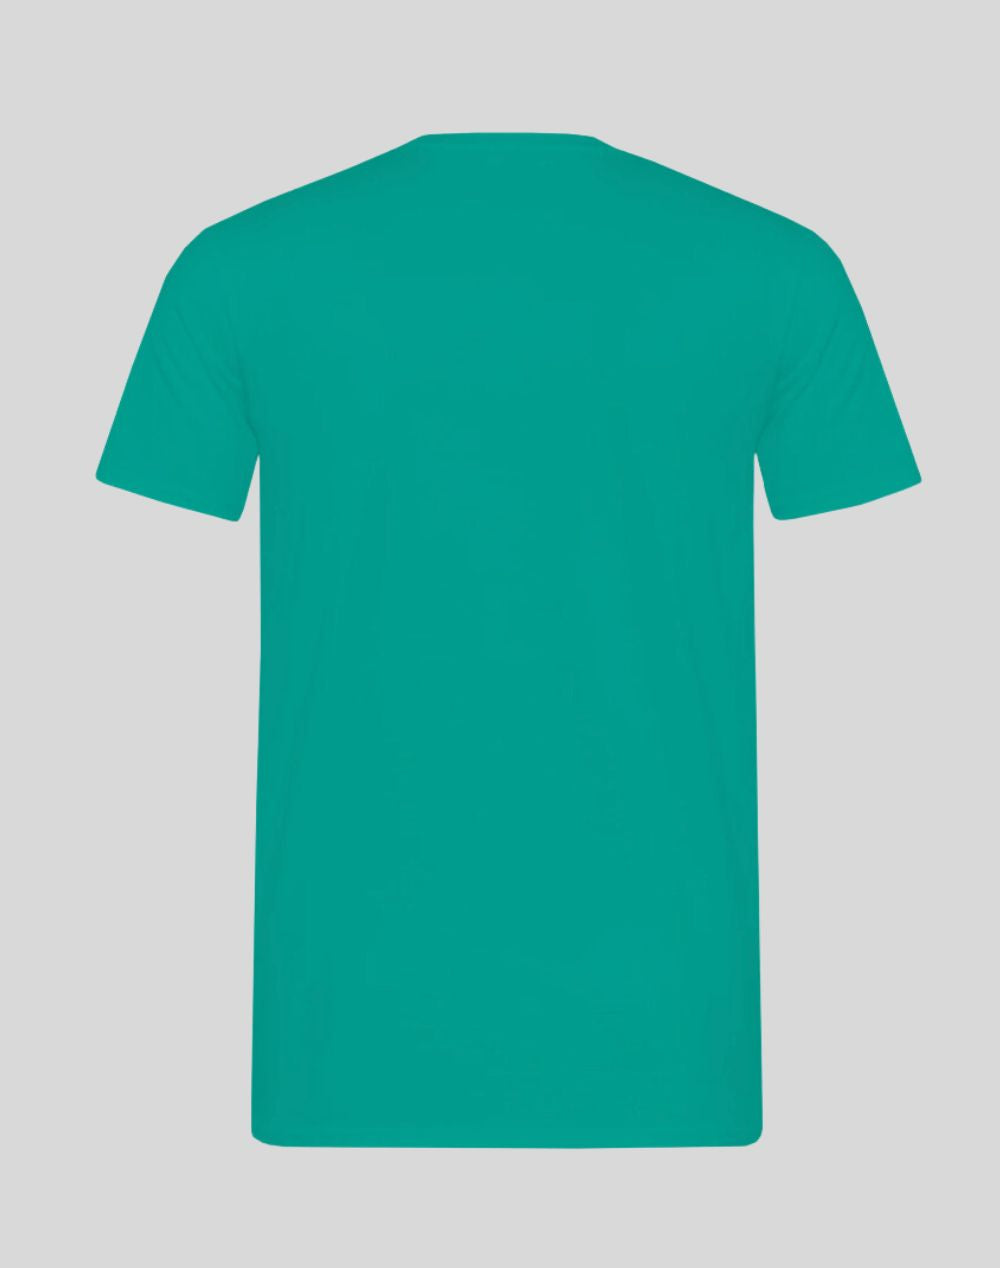 T-Shirt Winterspiele Logo Mint Unisex